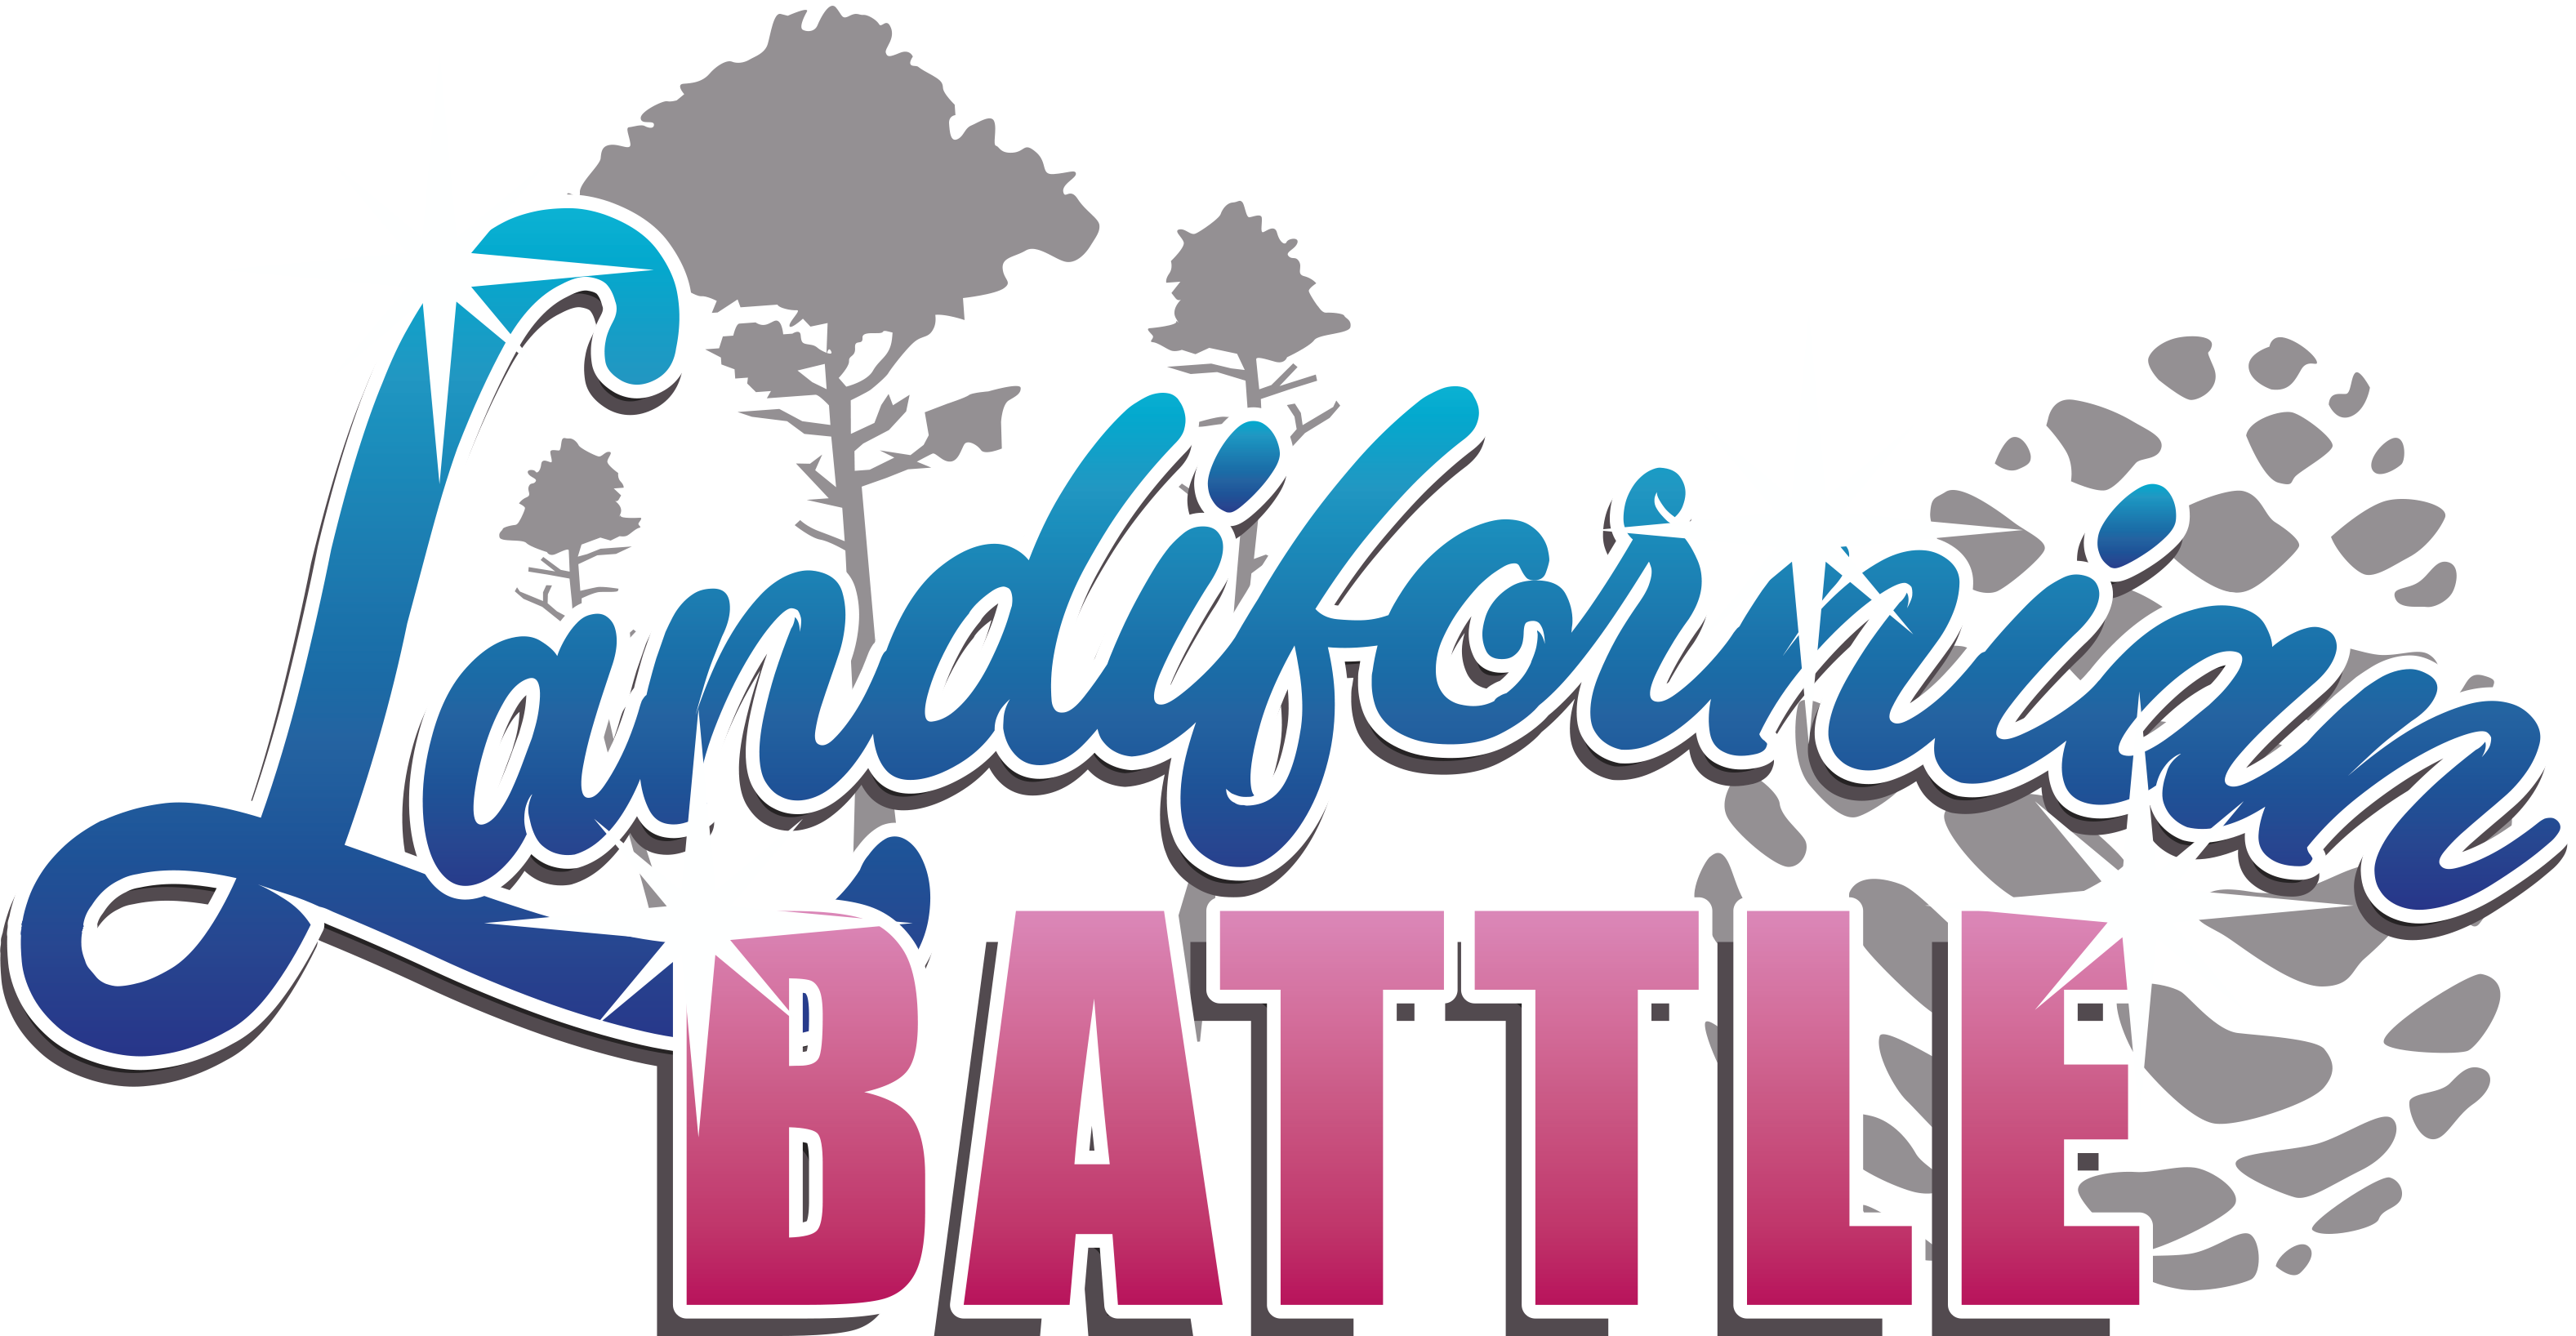 Compétition de crossfit - Landifornian Battle